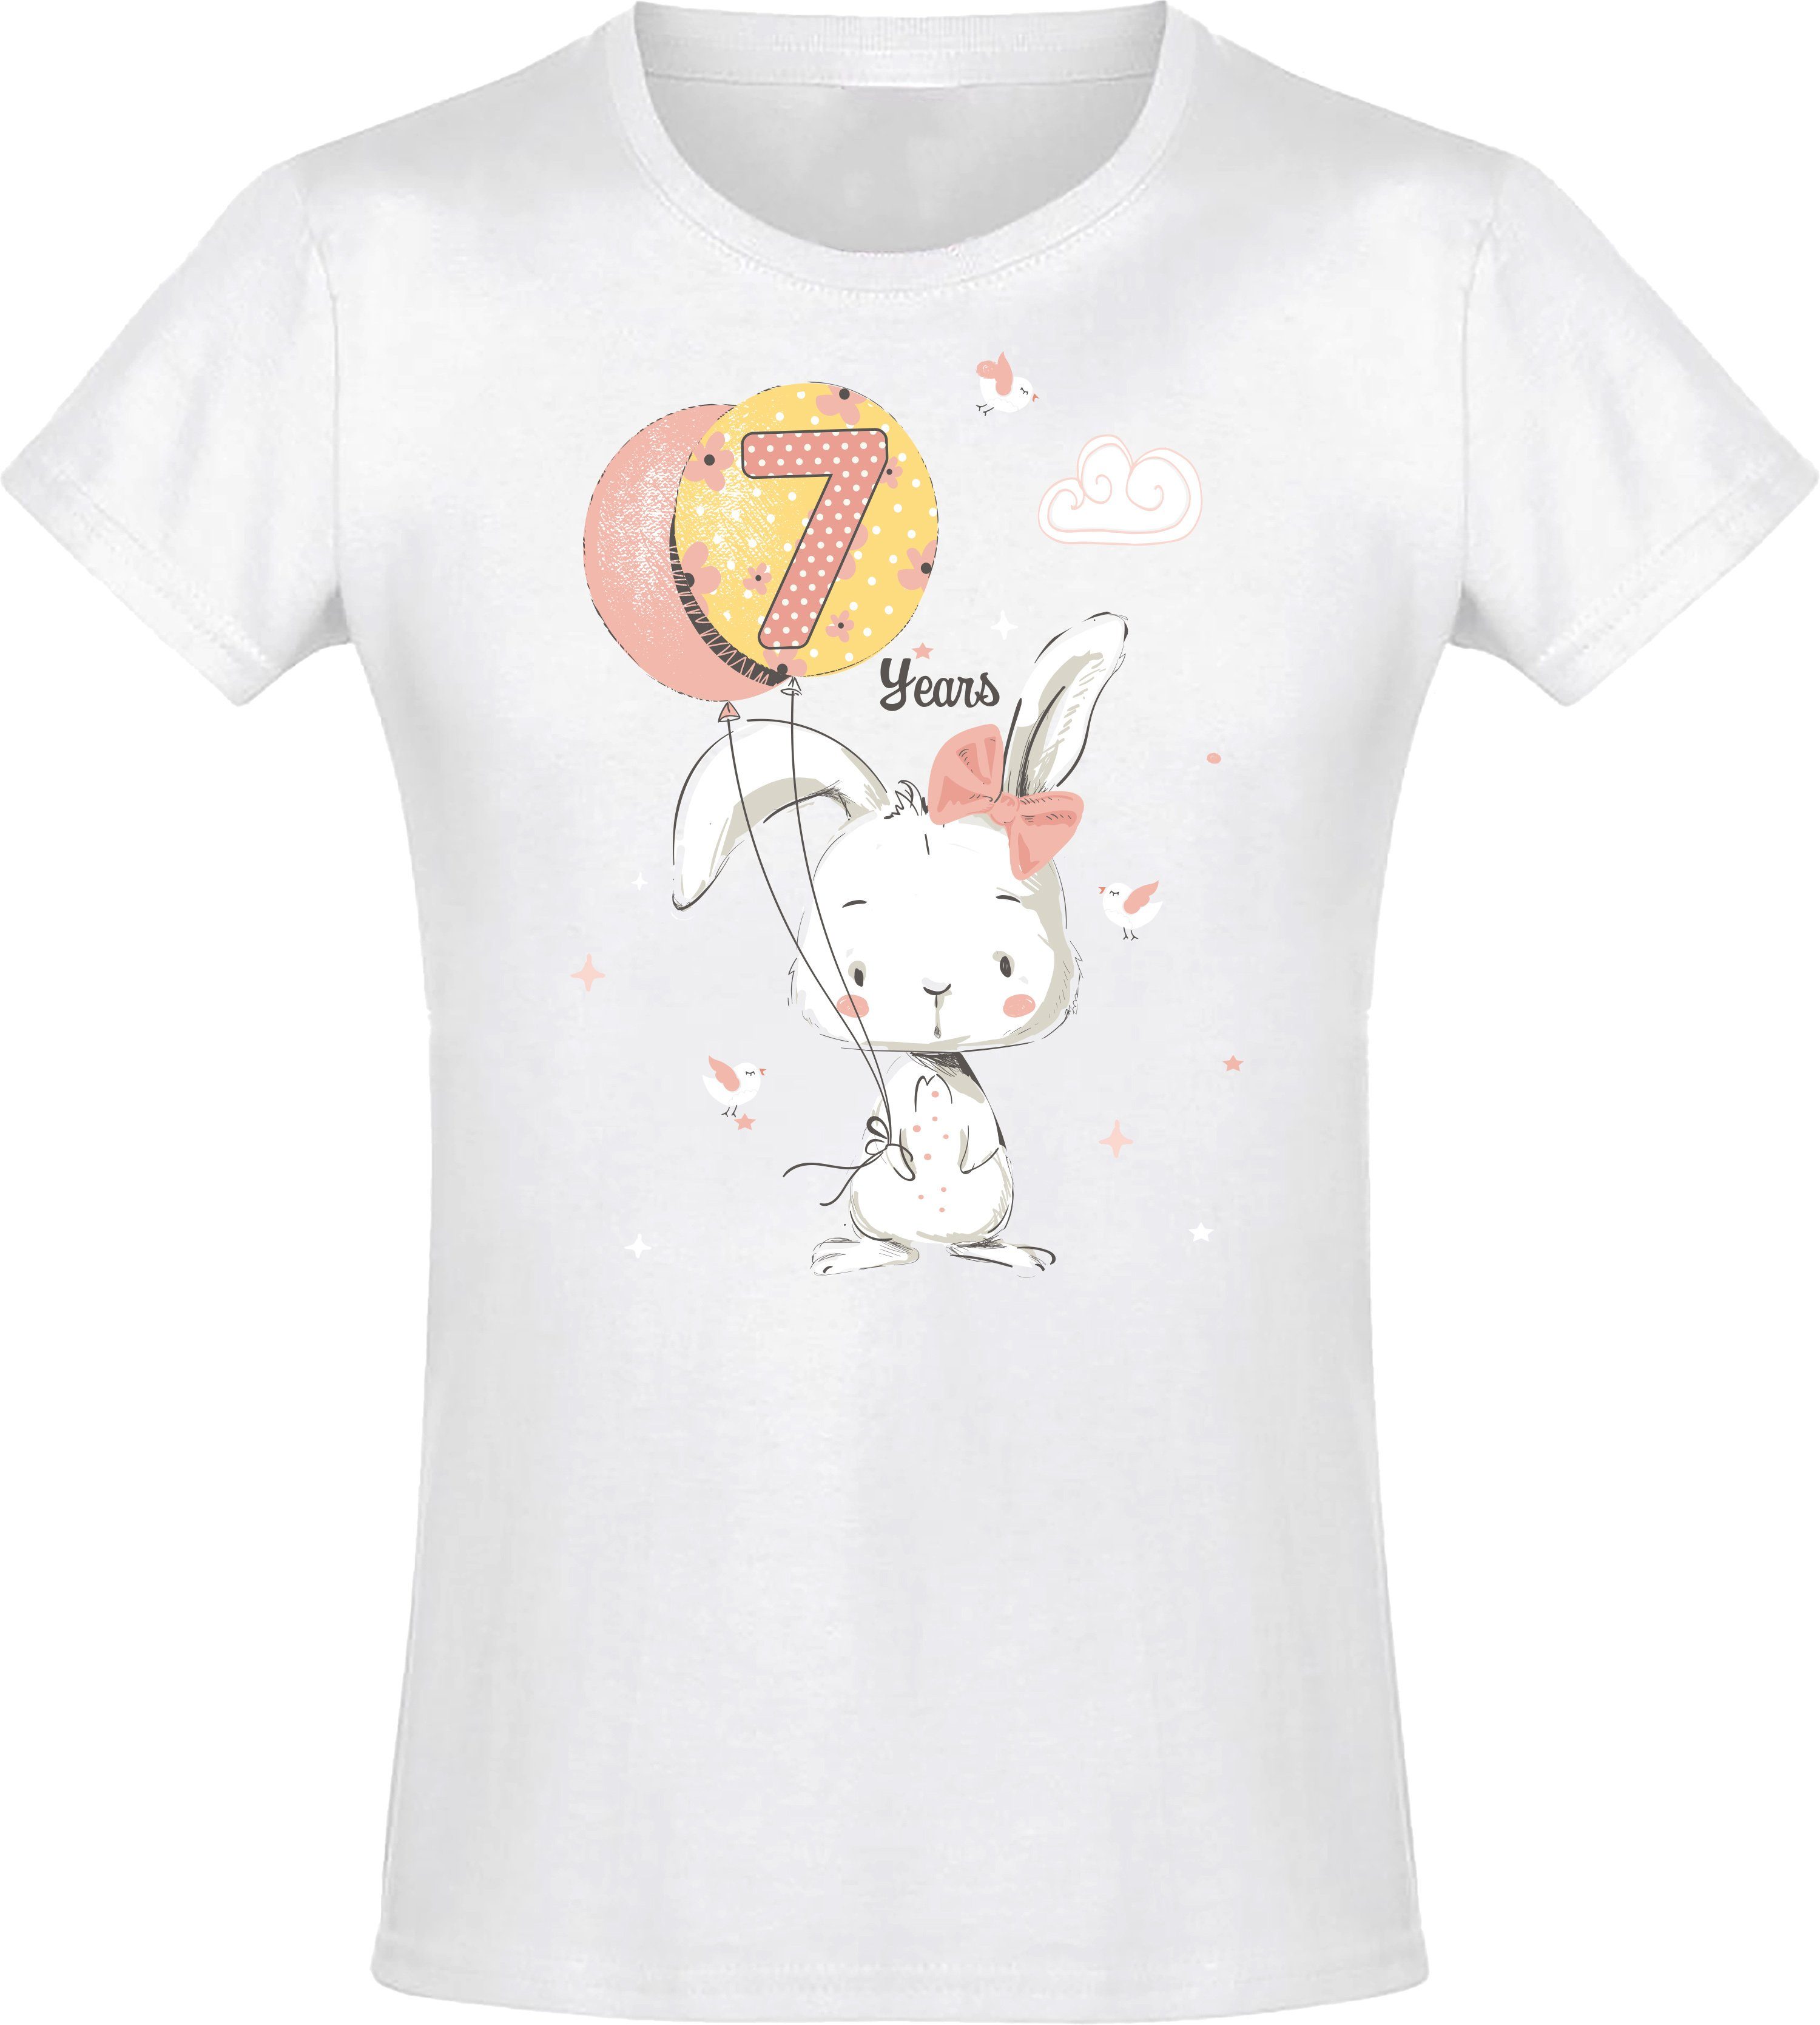 Baddery Print-Shirt Geburstagsgeschenk für Mädchen : 7 Jahre mit Hase hochwertiger Siebdruck, aus Baumwolle Weiß | T-Shirts